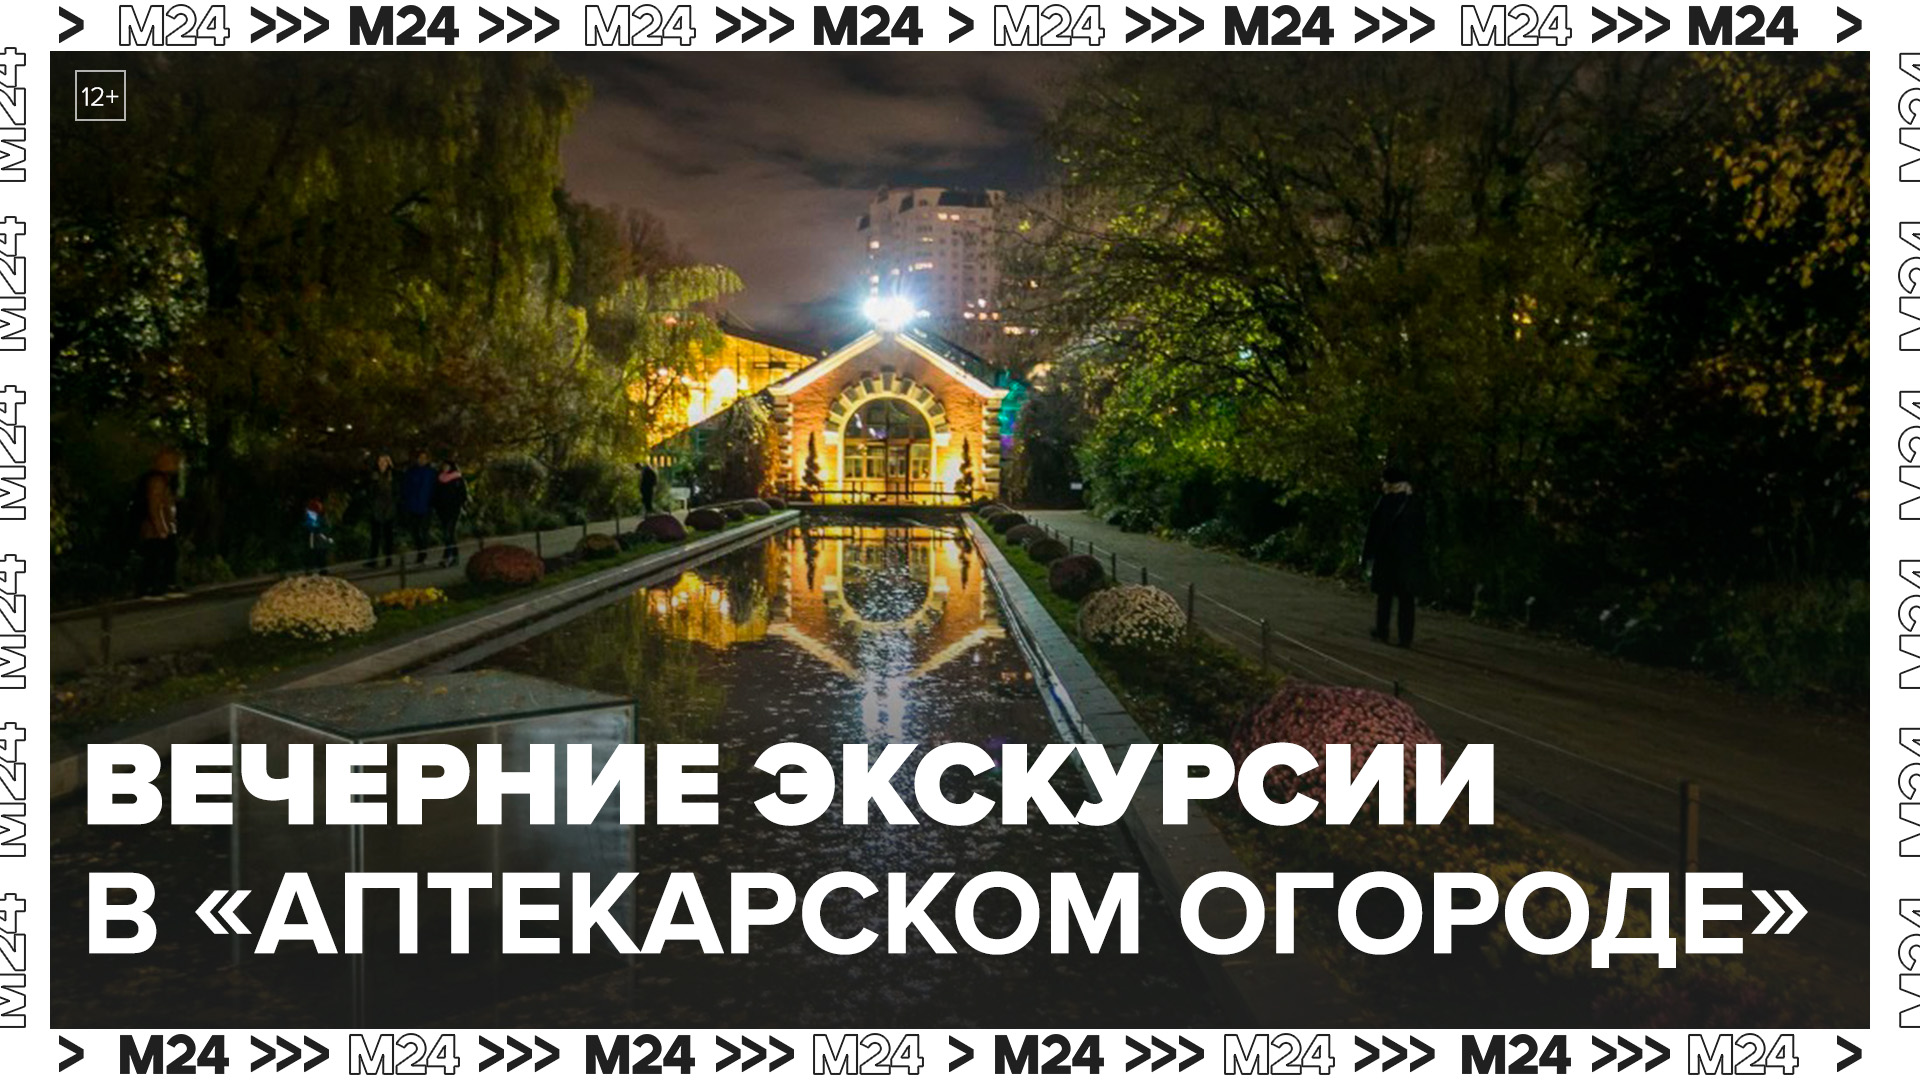 Вечерние экскурсии запустили в "Аптекарском огороде" - Москва 24